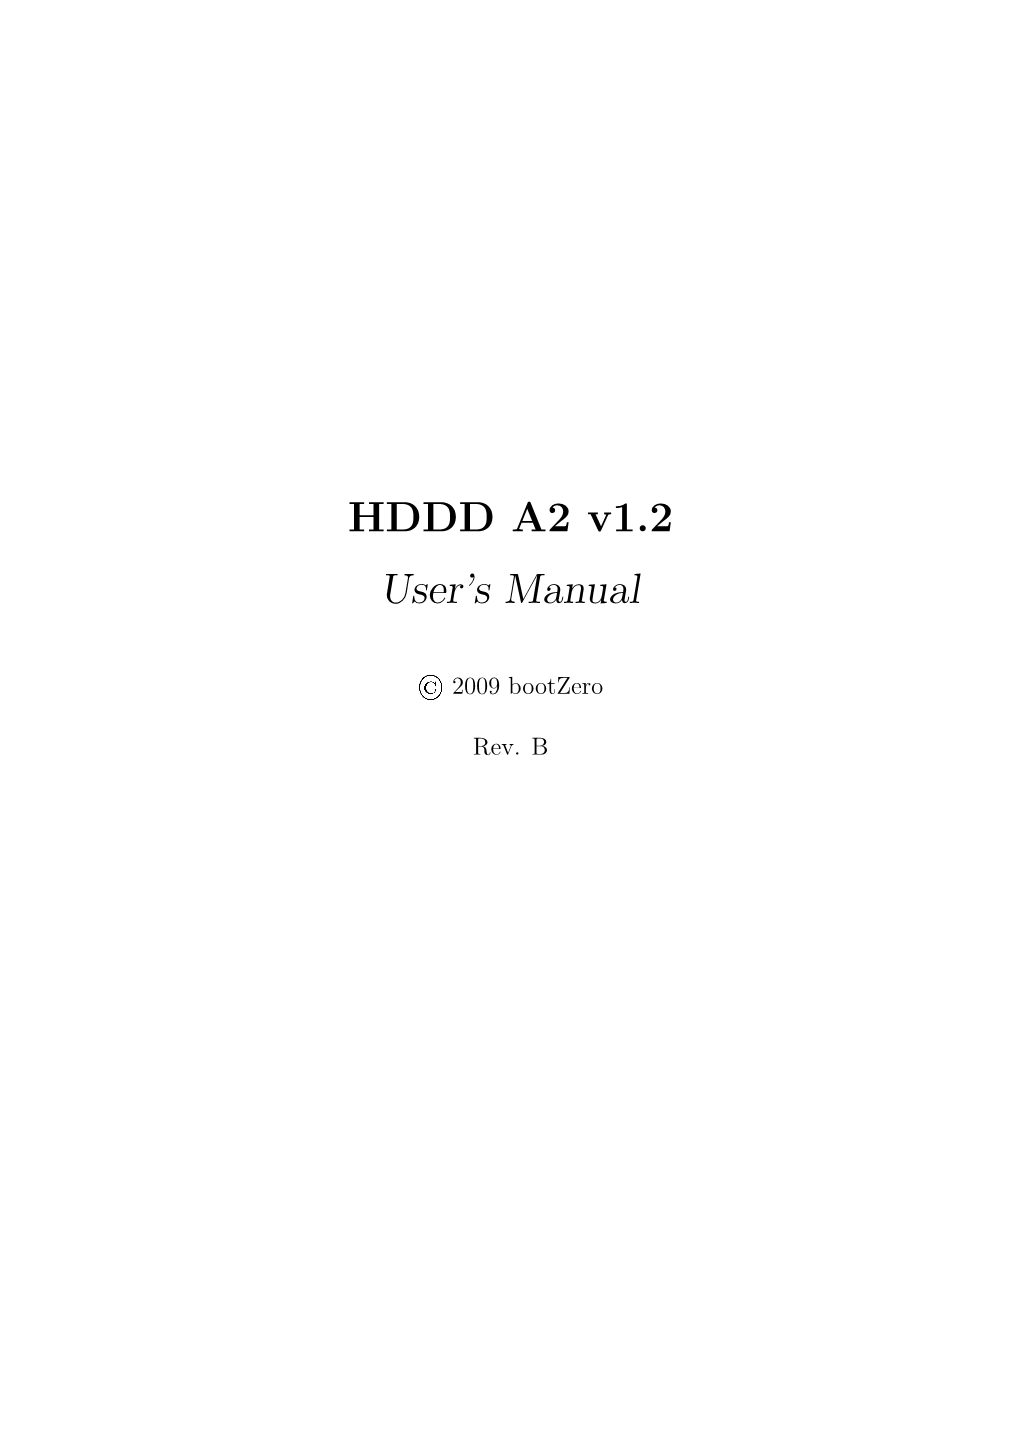 HDDD A2 V1.2 User's Manual